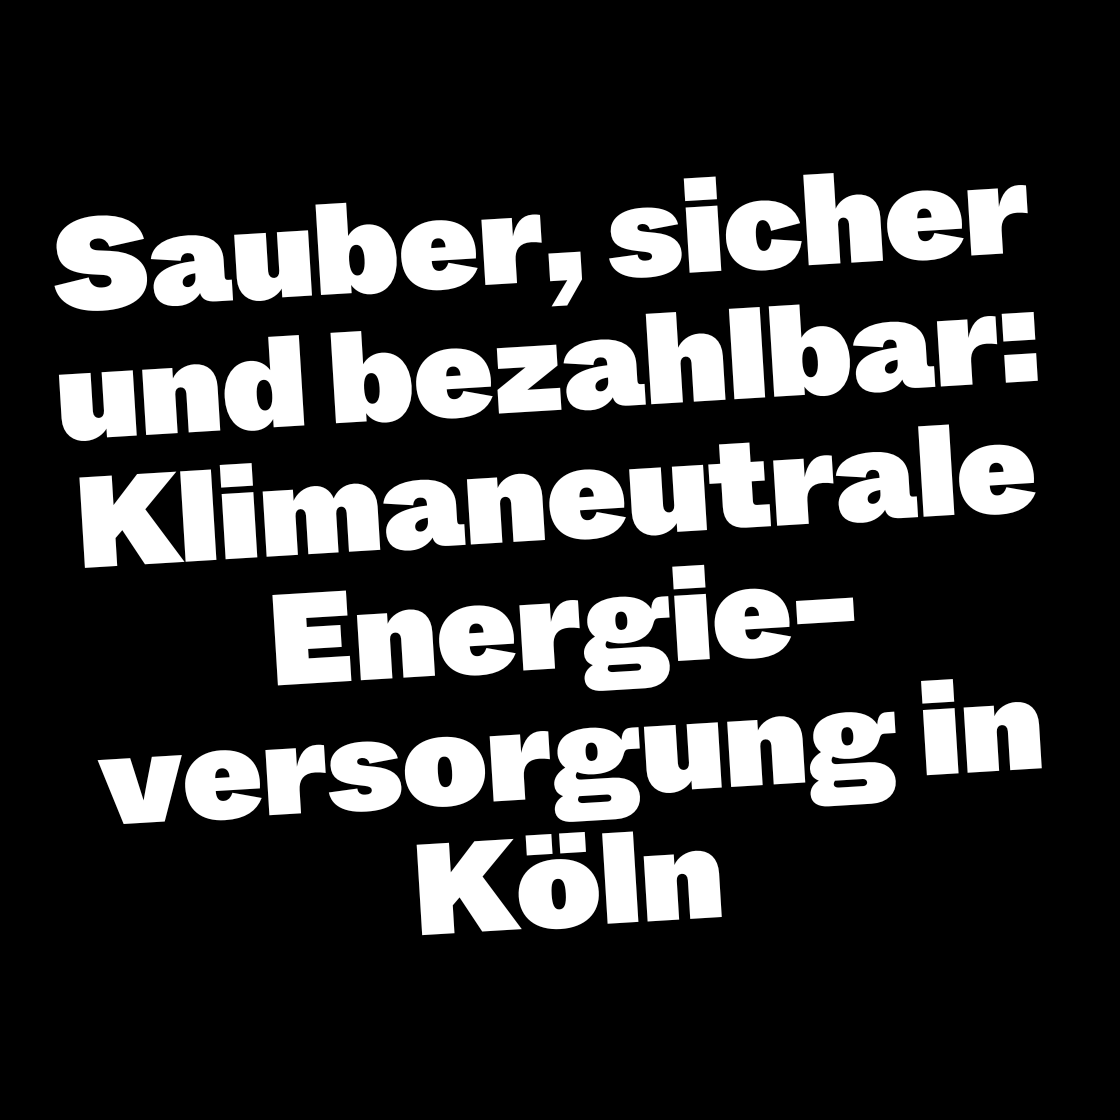 Sauber, sicher und bezahlbar: Klimaneutrale Energie-versorgung in Köln